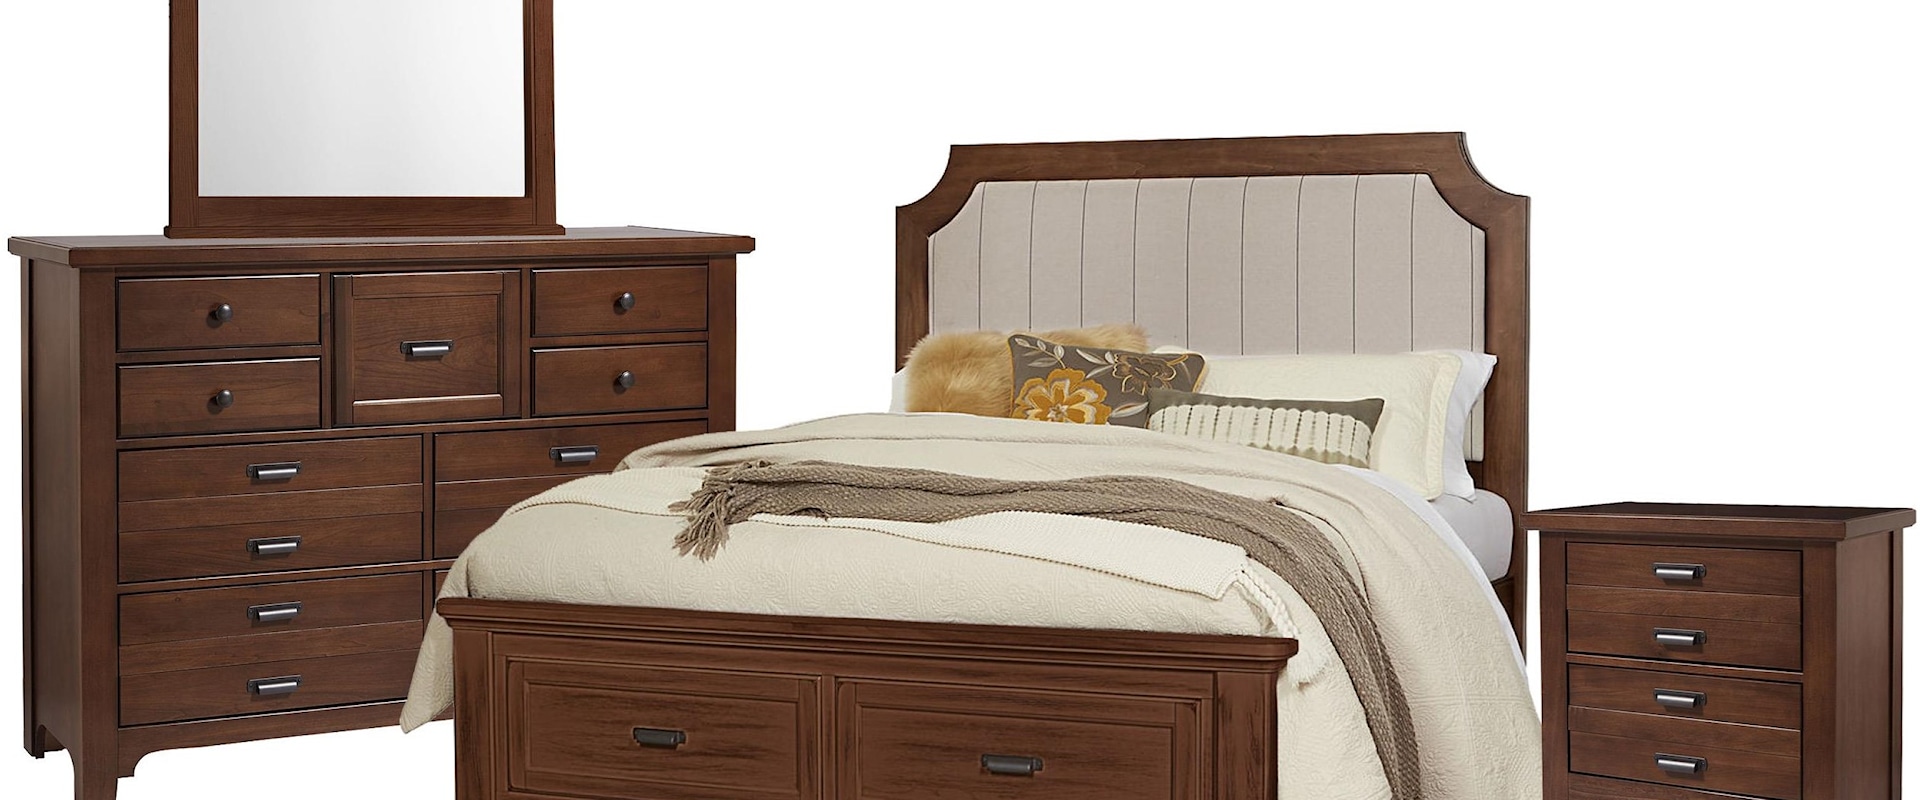 King Upholstered Storage Bed, 9 Drawer Dresser, Master Landscape Mirror, 2 Drawer Nightstand